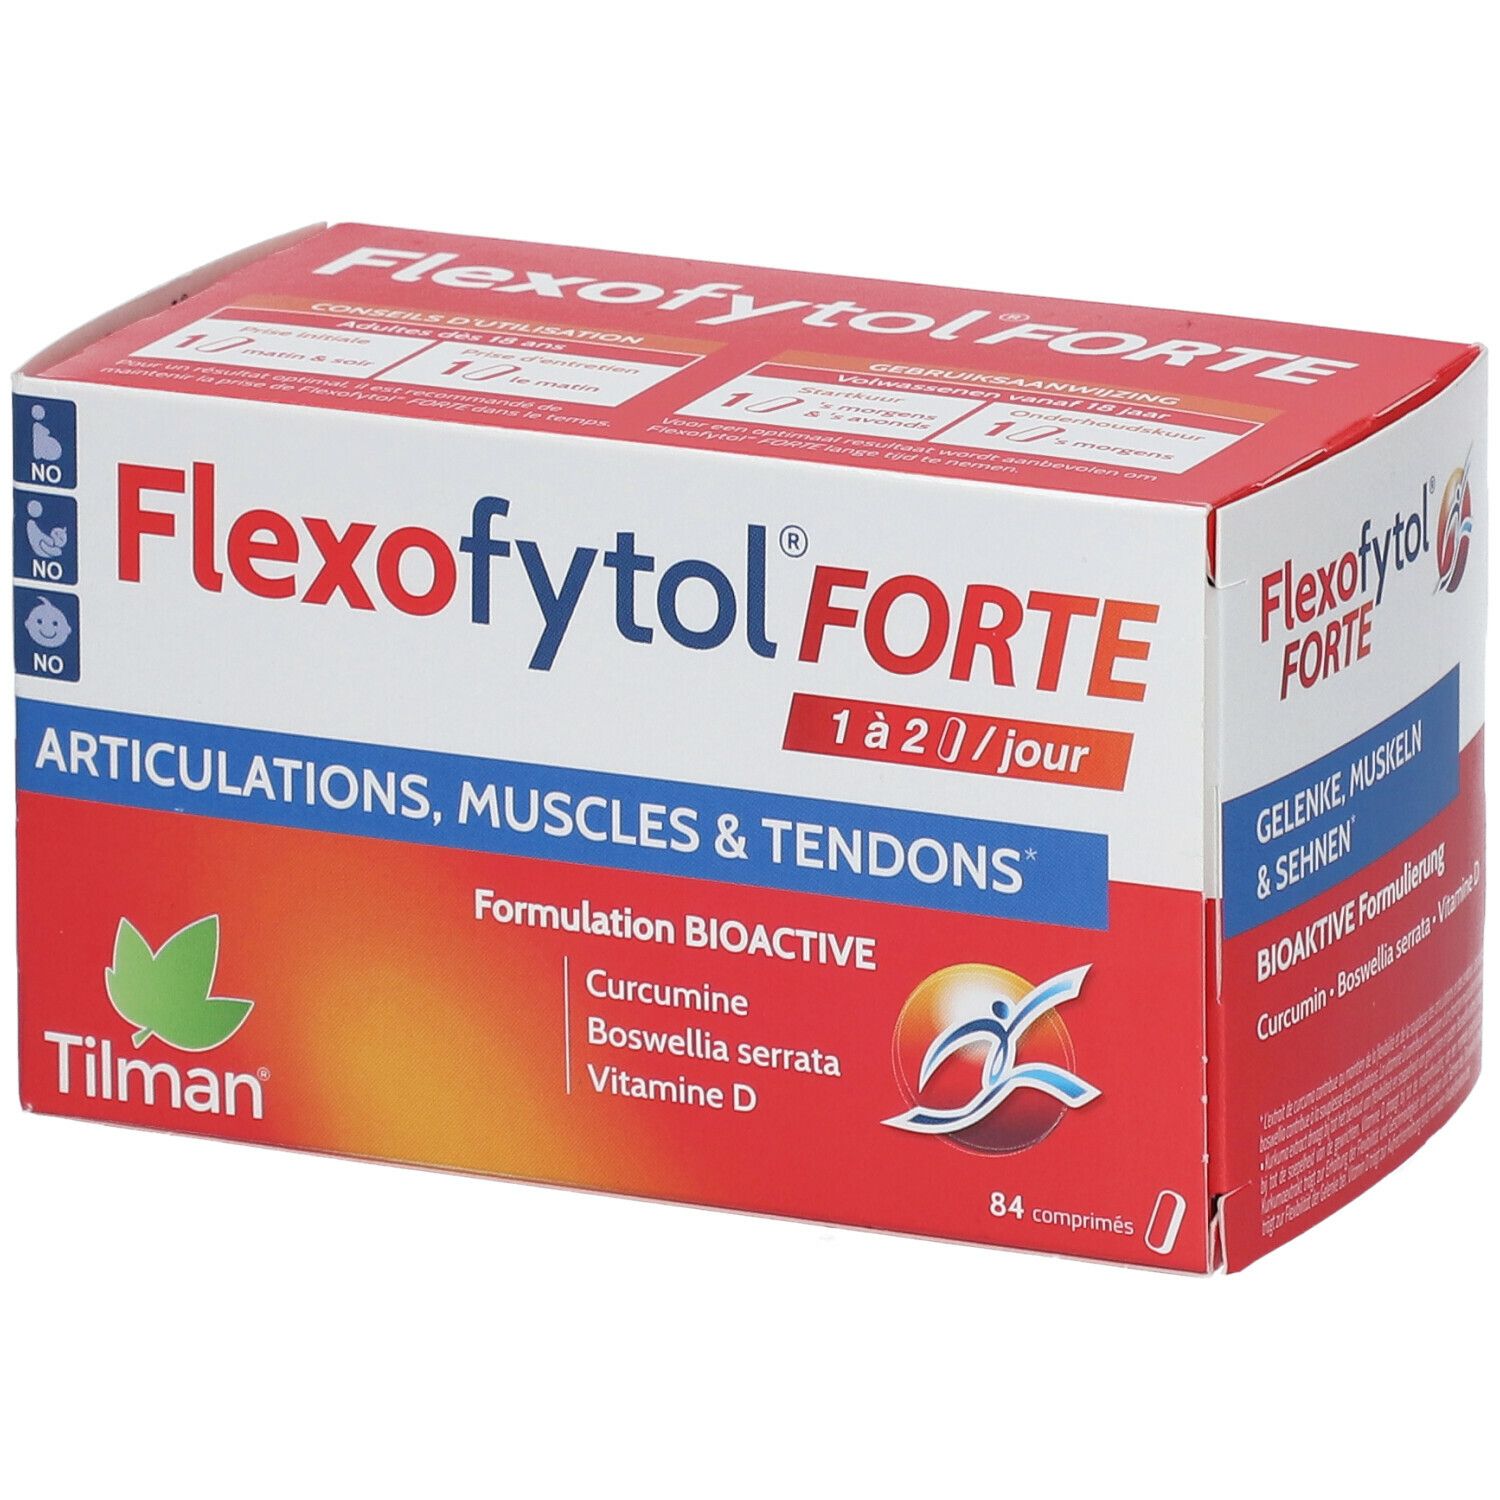 Flexofytol® Forte